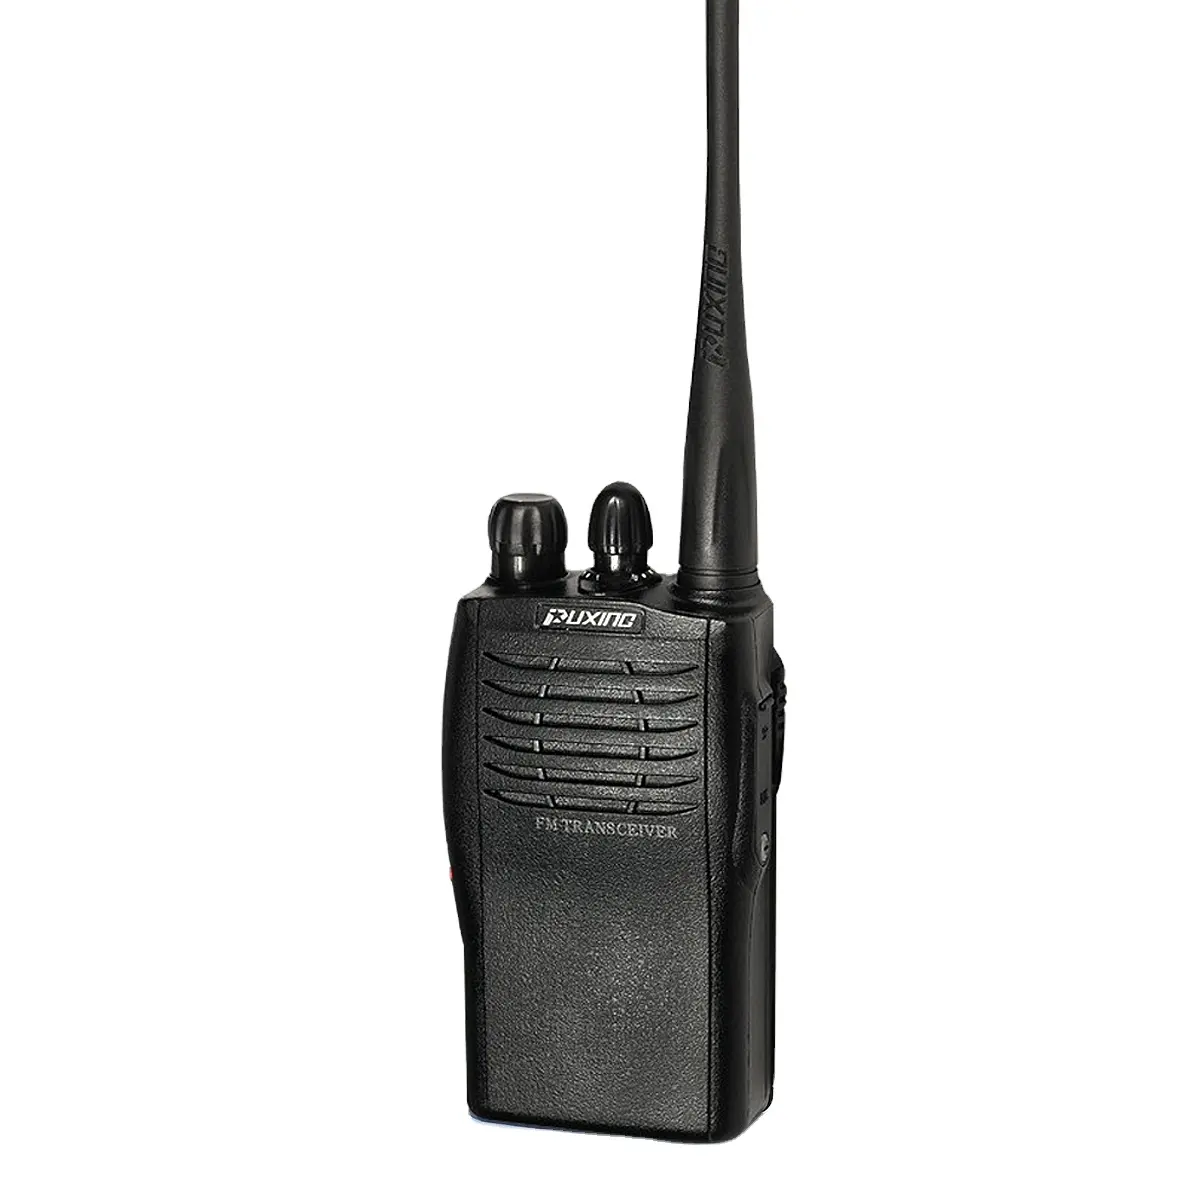 Puxing walkie talkie portatile PX-728 pmr446 ricetrasmettitore compatto <span class=keywords><strong>woki</strong></span> toki arbitro di calcio walkie talkie